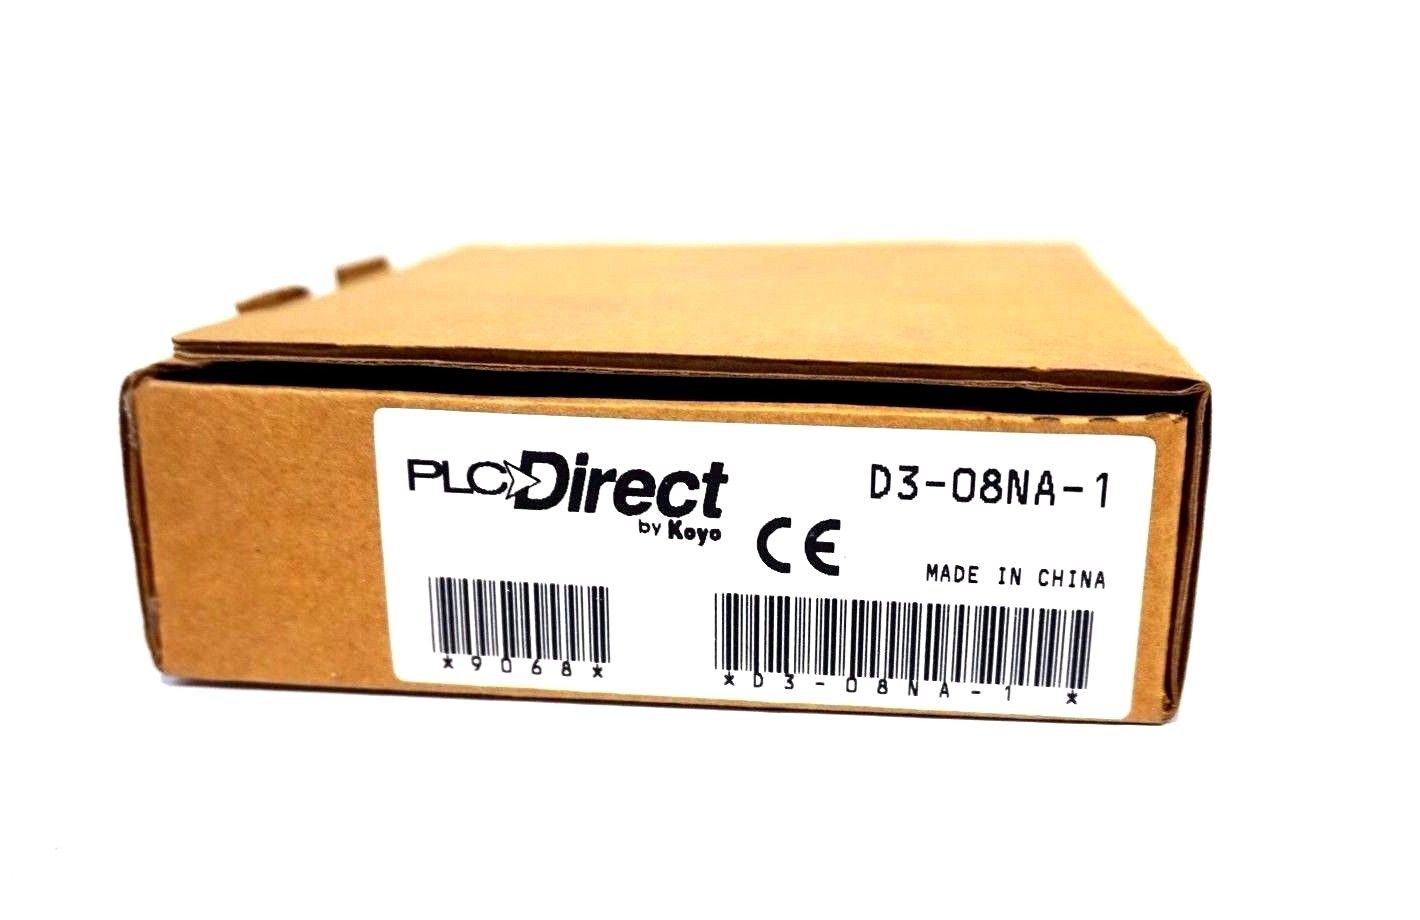 Details about   PLC Direct D3-08NA-1 PLC Input Module 